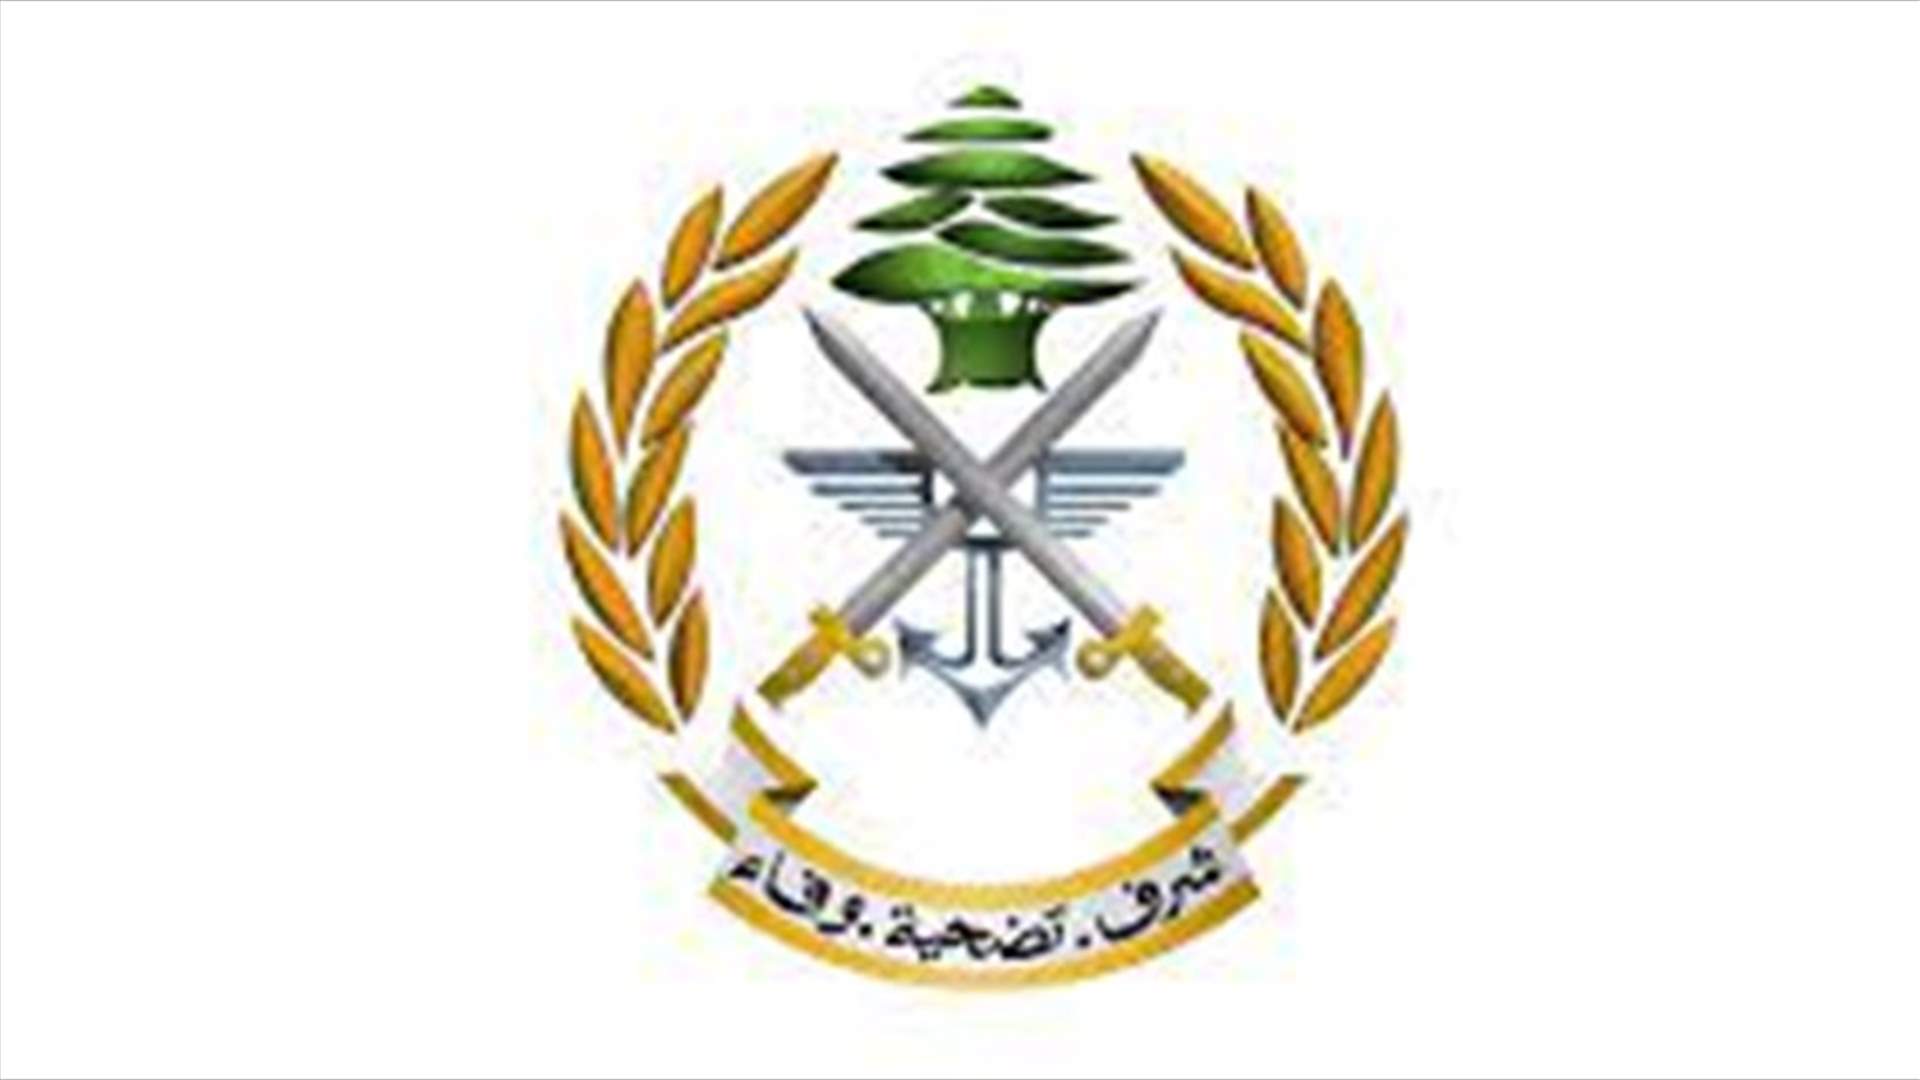 الجيش: توقيف أشخاص في منطقتي برج البراجنة وأنطلياس بجرائم مختلفة